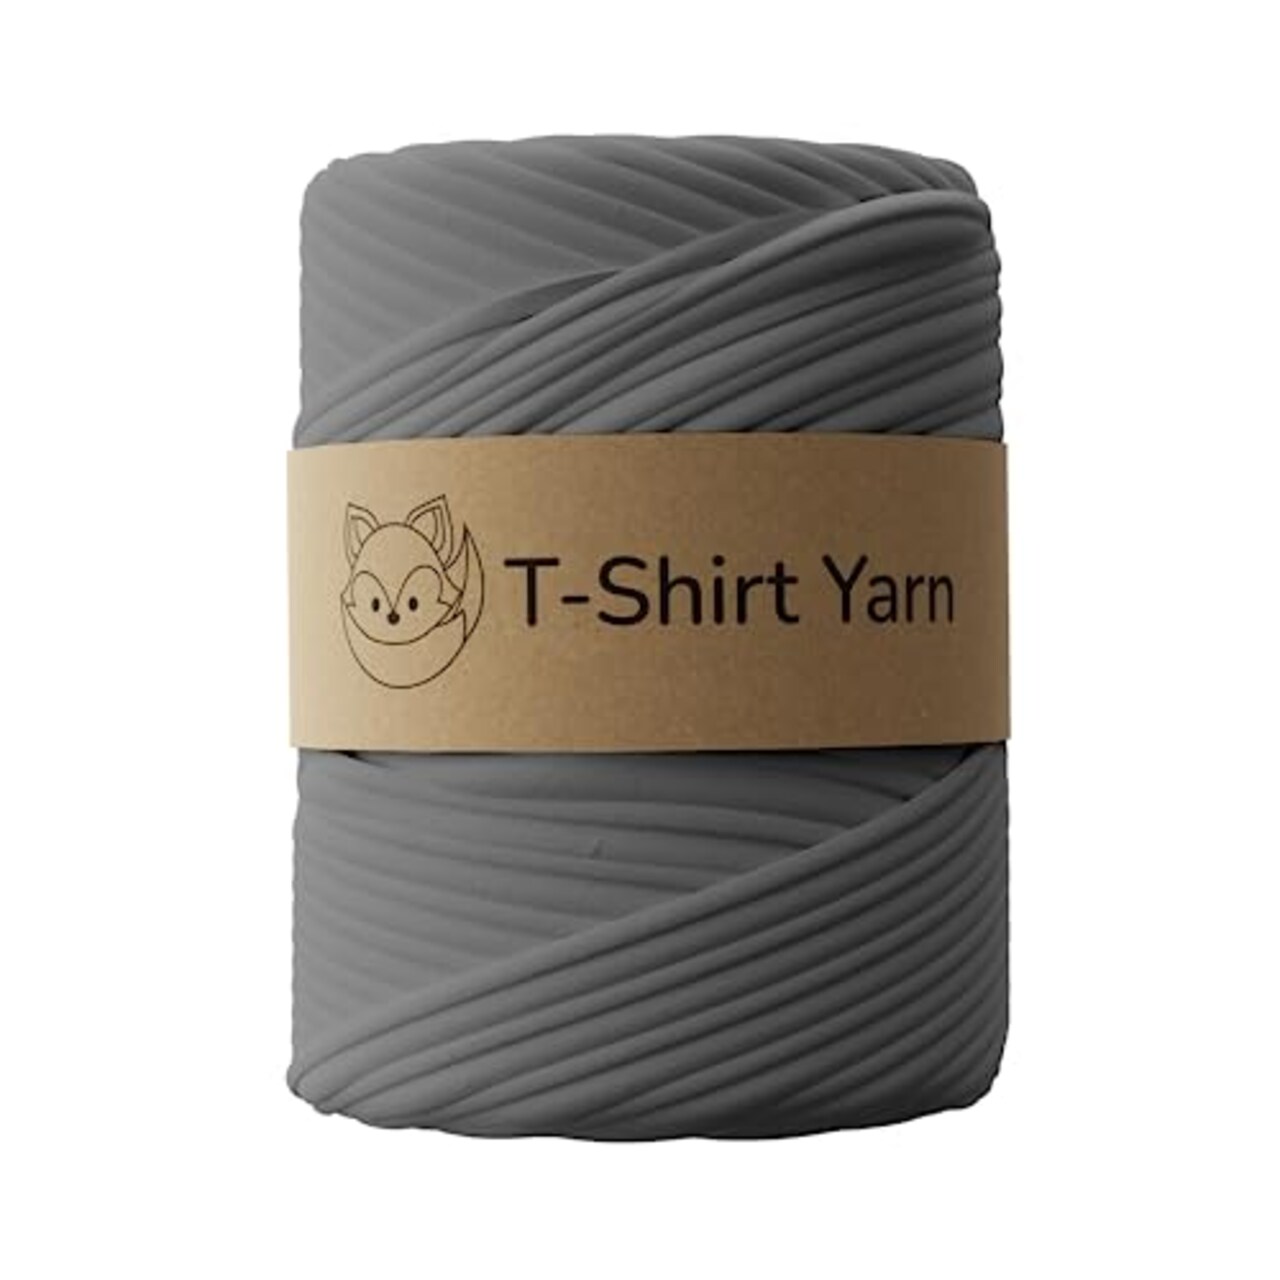 T-Shirt Yarn - Cotton Fettuccini Zpagetti - Sewing Knitting